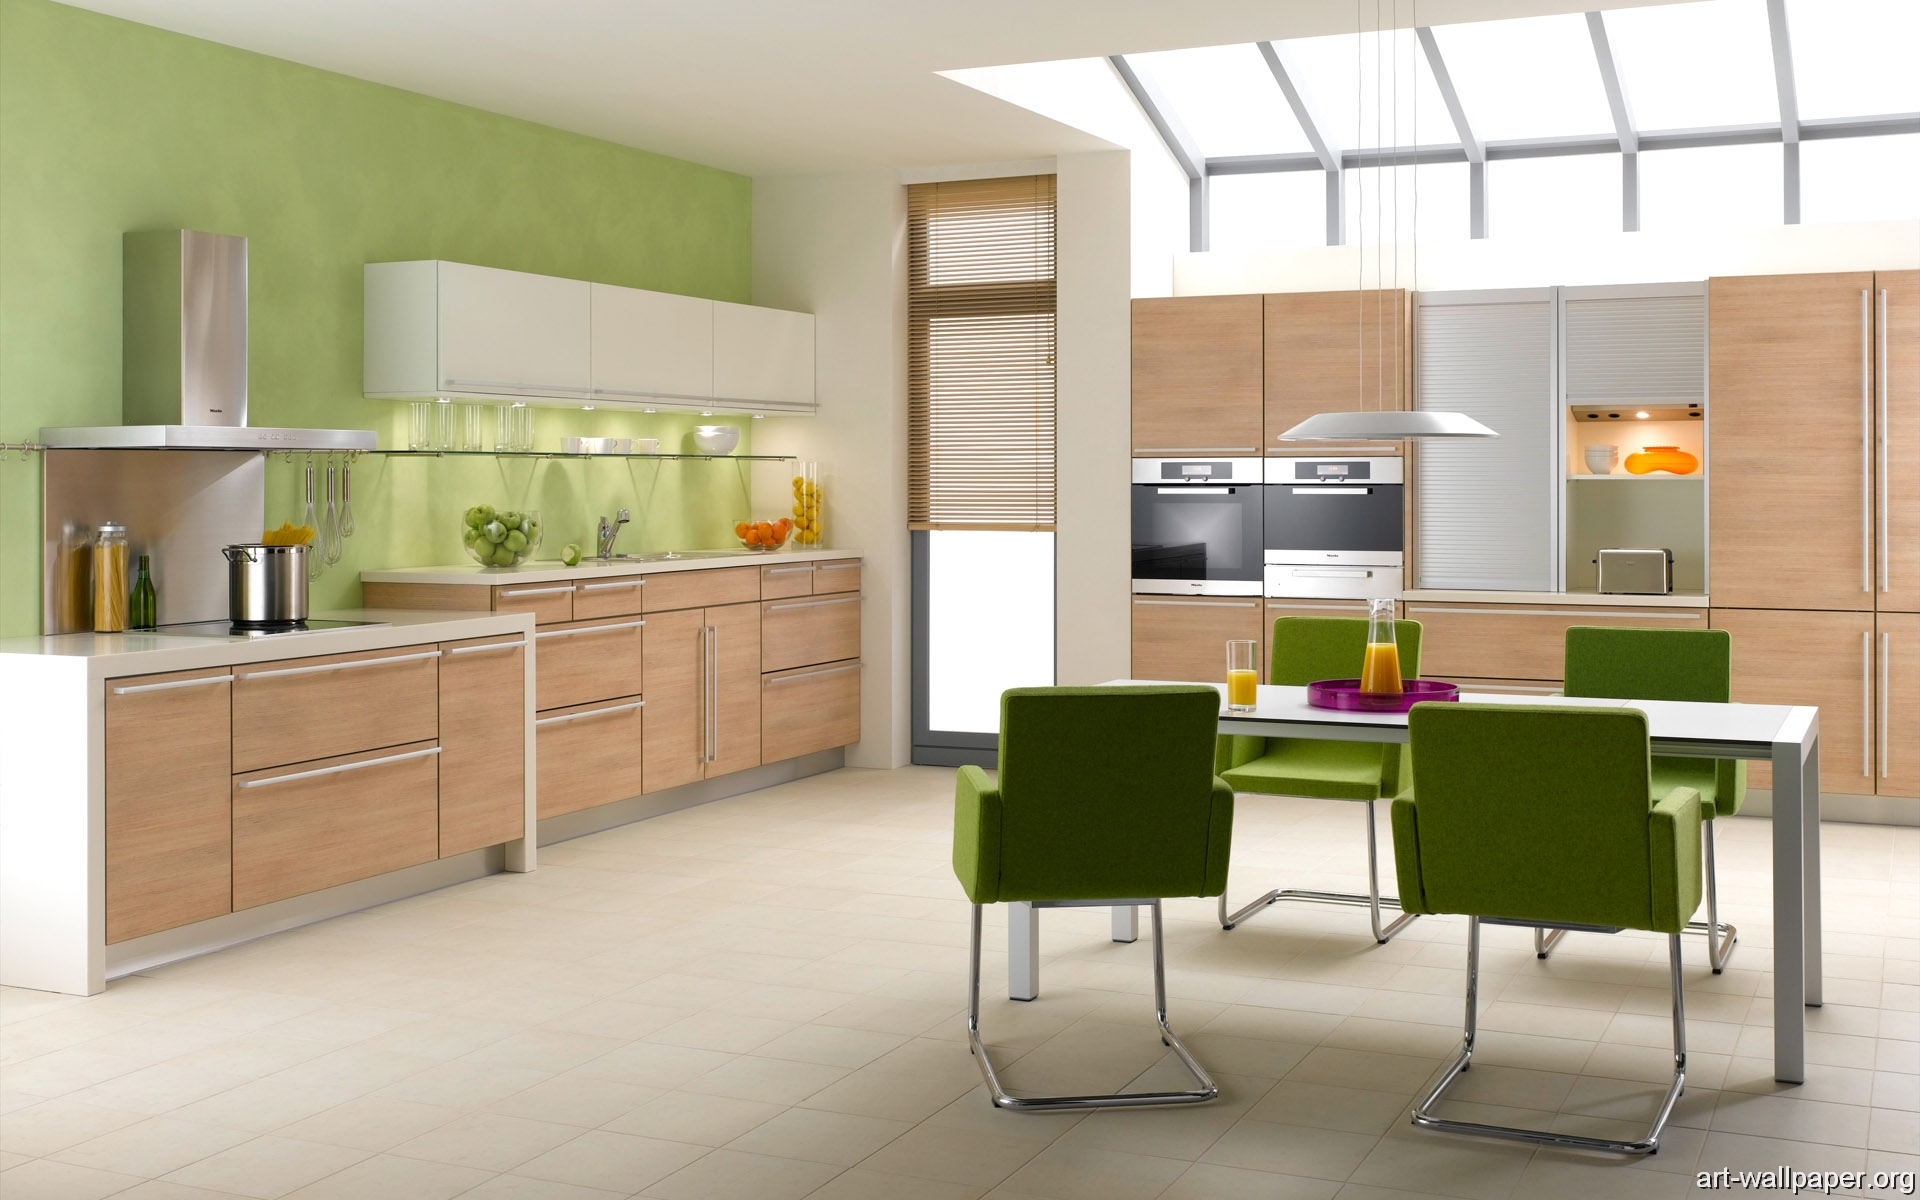 kitchen wallpaper,furniture,room,kitchen,interior design,cabinetry